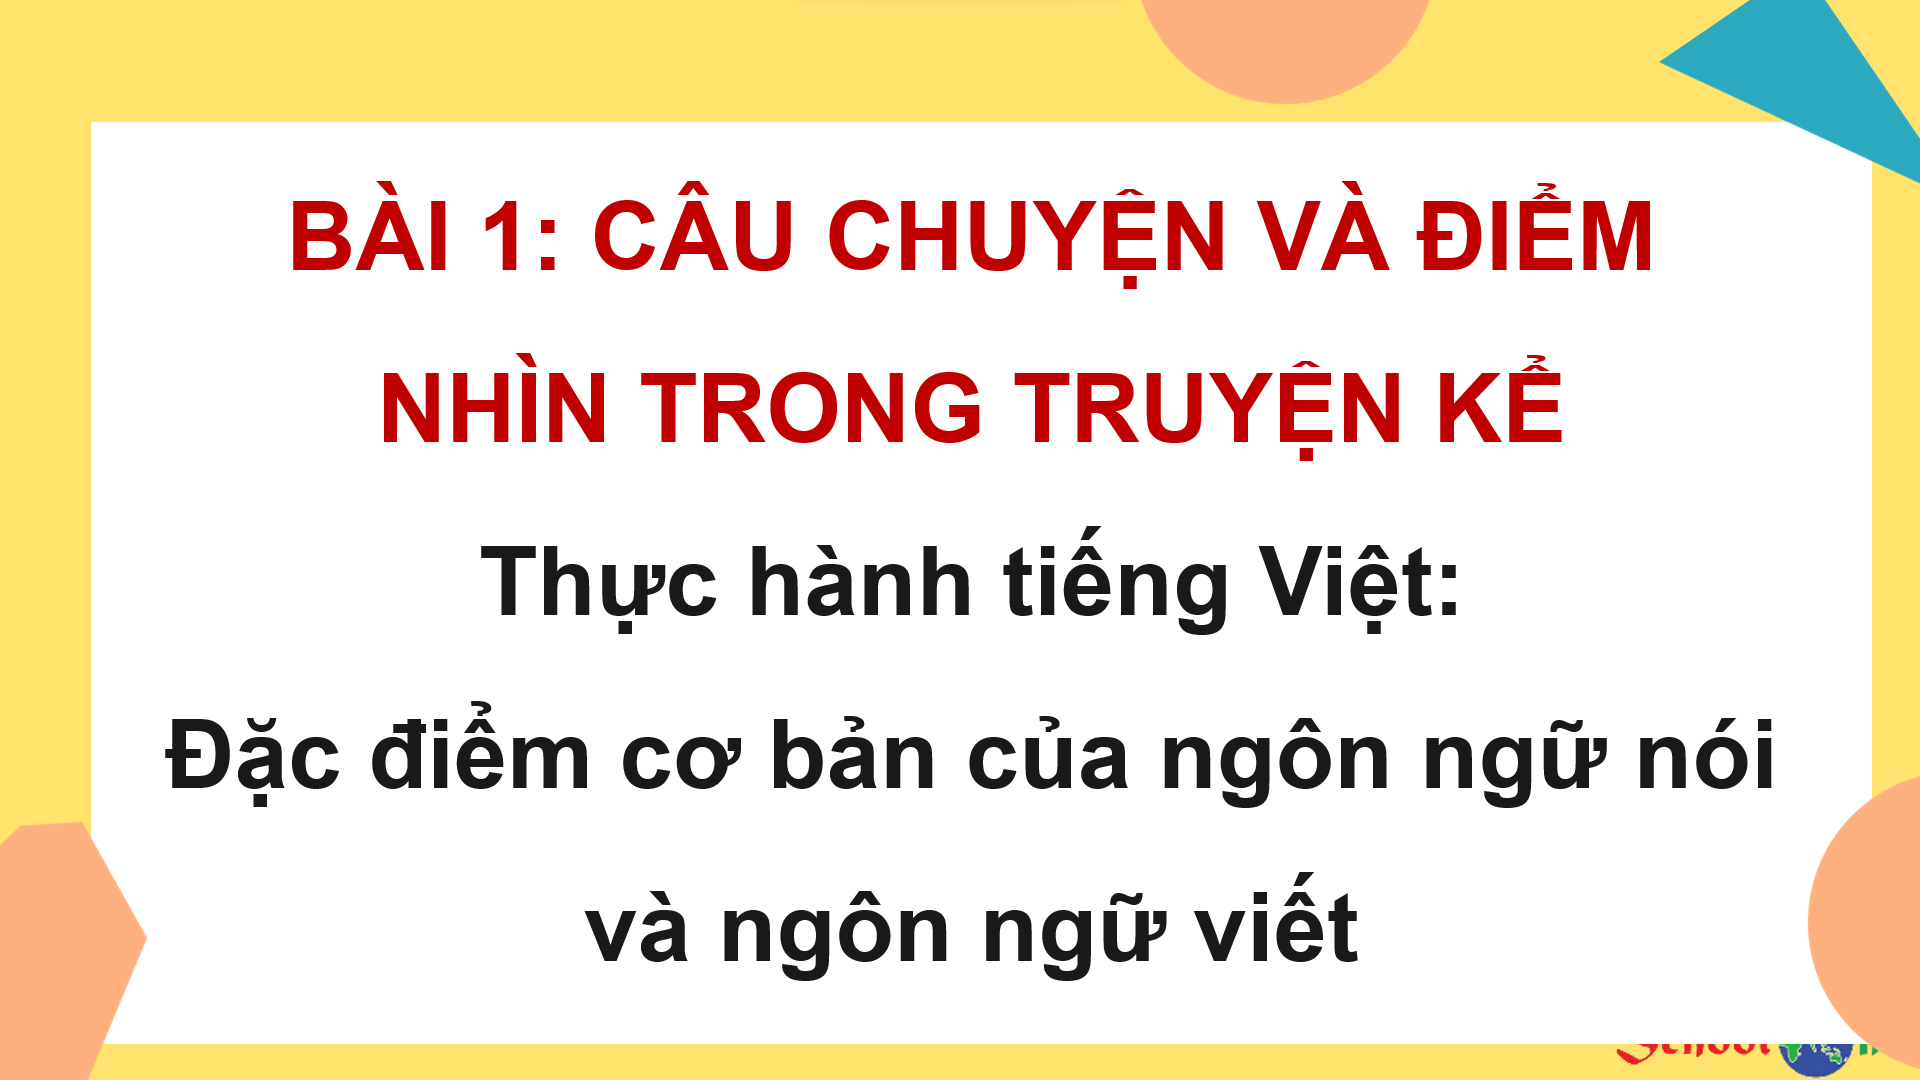 Bài 1: Thực hành tiếng Việt: Đặc điểm cơ bản của ngôn ngữ nói và ngôn ngữ viết - Bộ sách Kết nối tri thức với cuộc sống